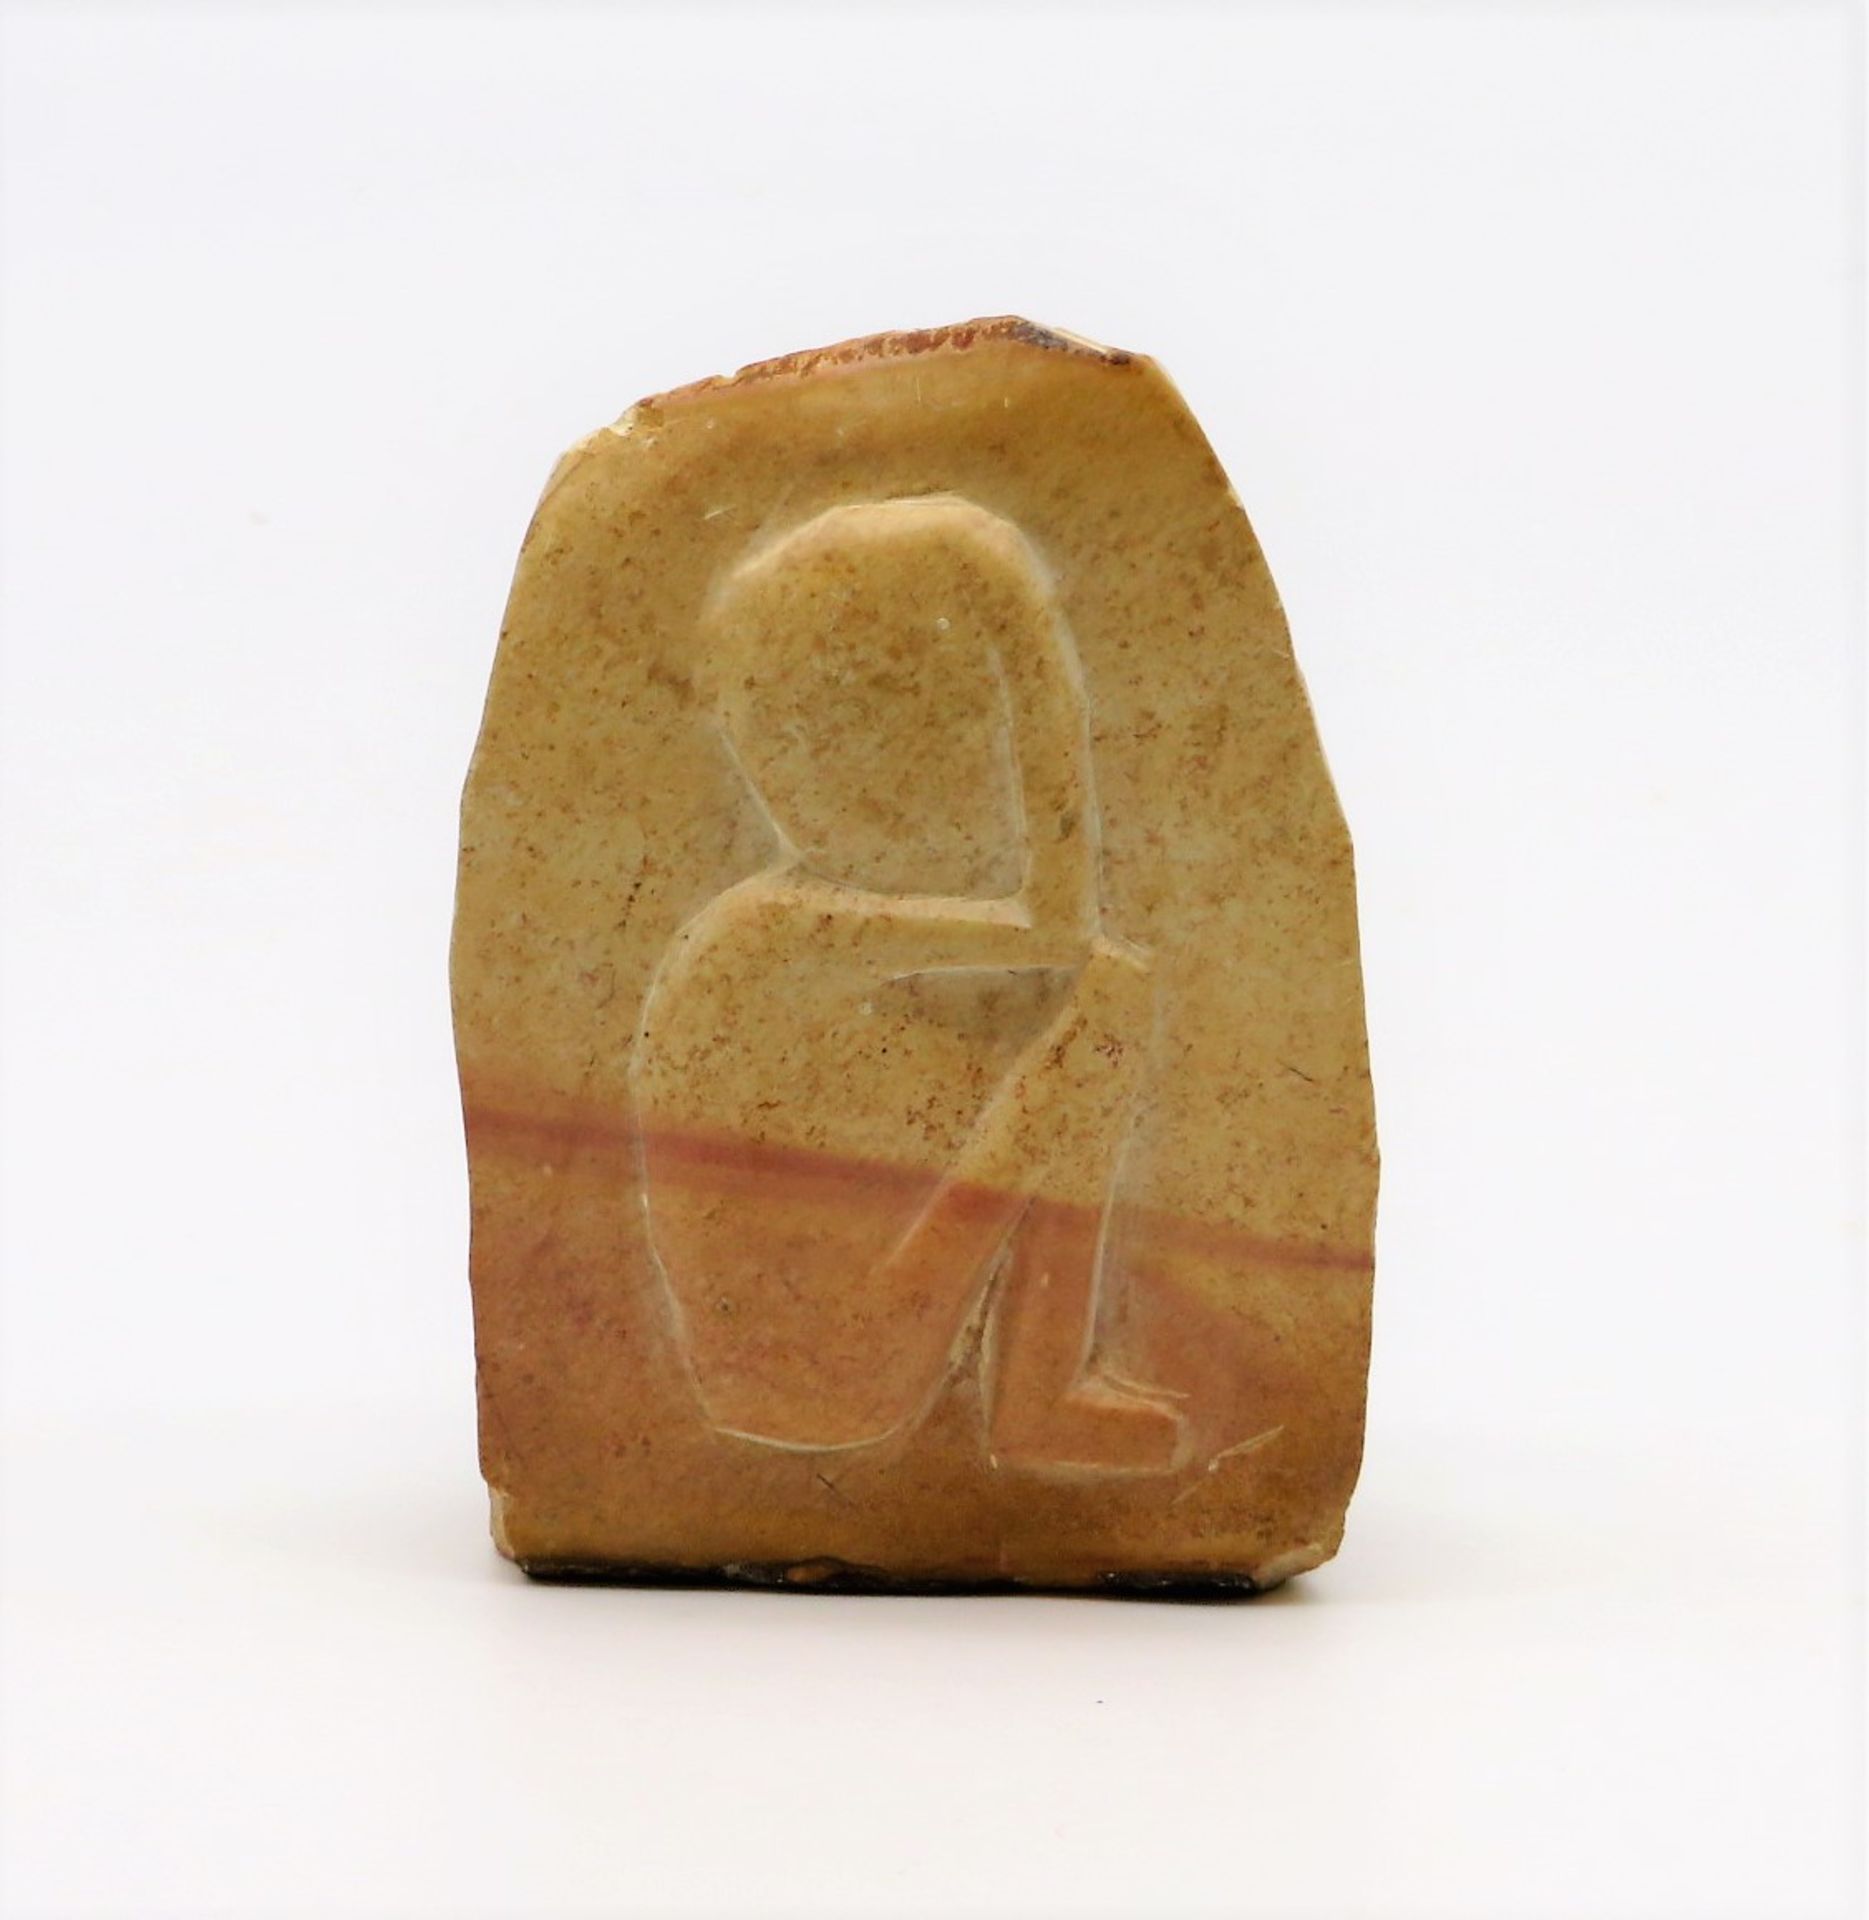 Schnitzerei, wohl Afrika, Stein geschnitzt mit Hockendem, 9,5 x 7 x 3 cm.